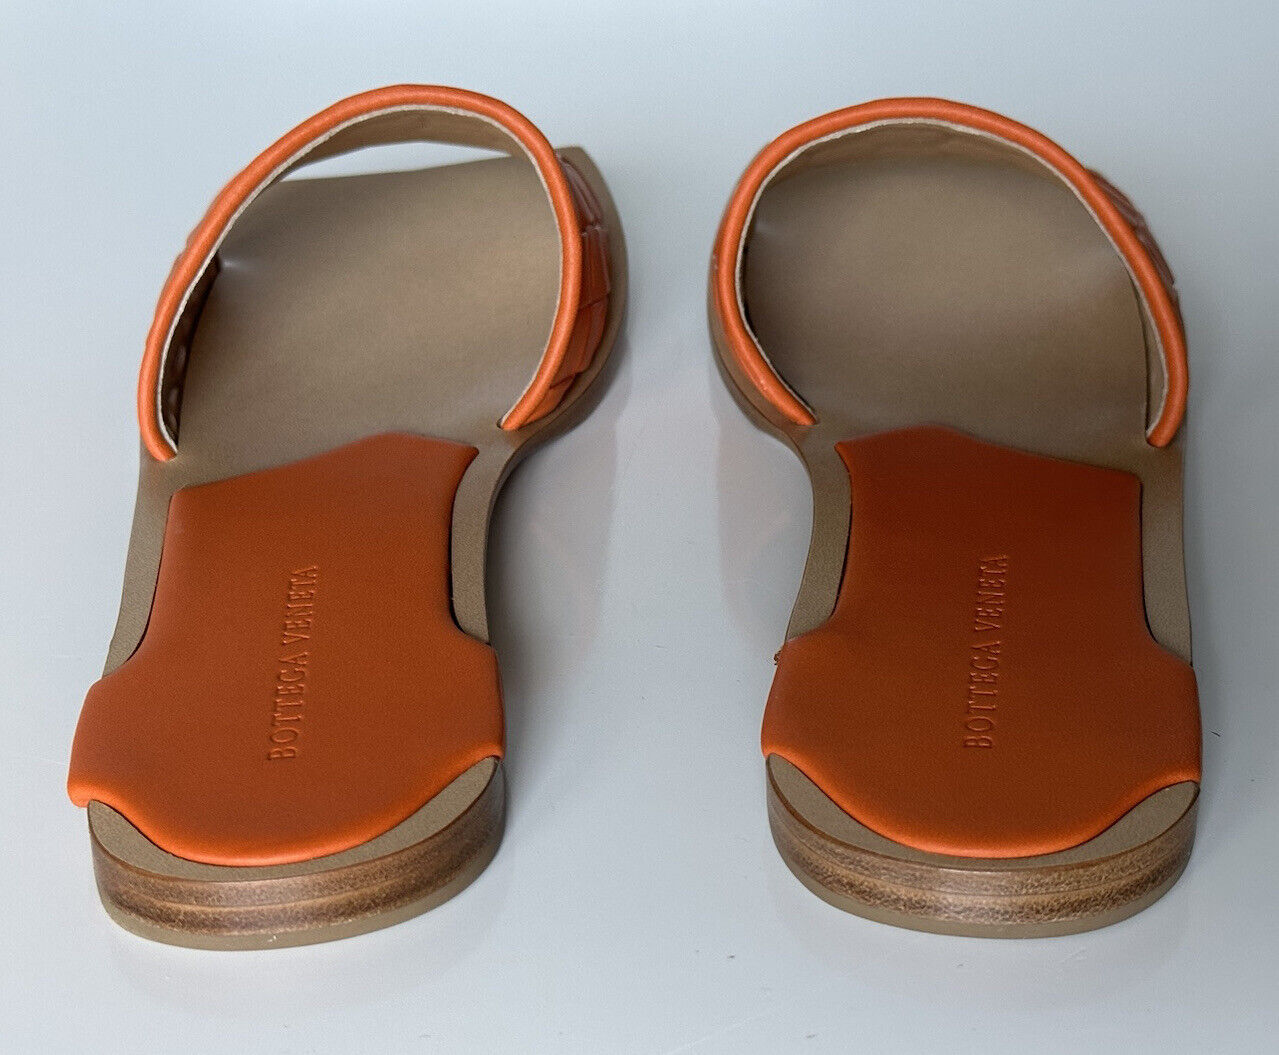 Кожаные сандалии без шнуровки Bottega Veneta Burned Orange за 620 долларов США 10 США (40) 578372 